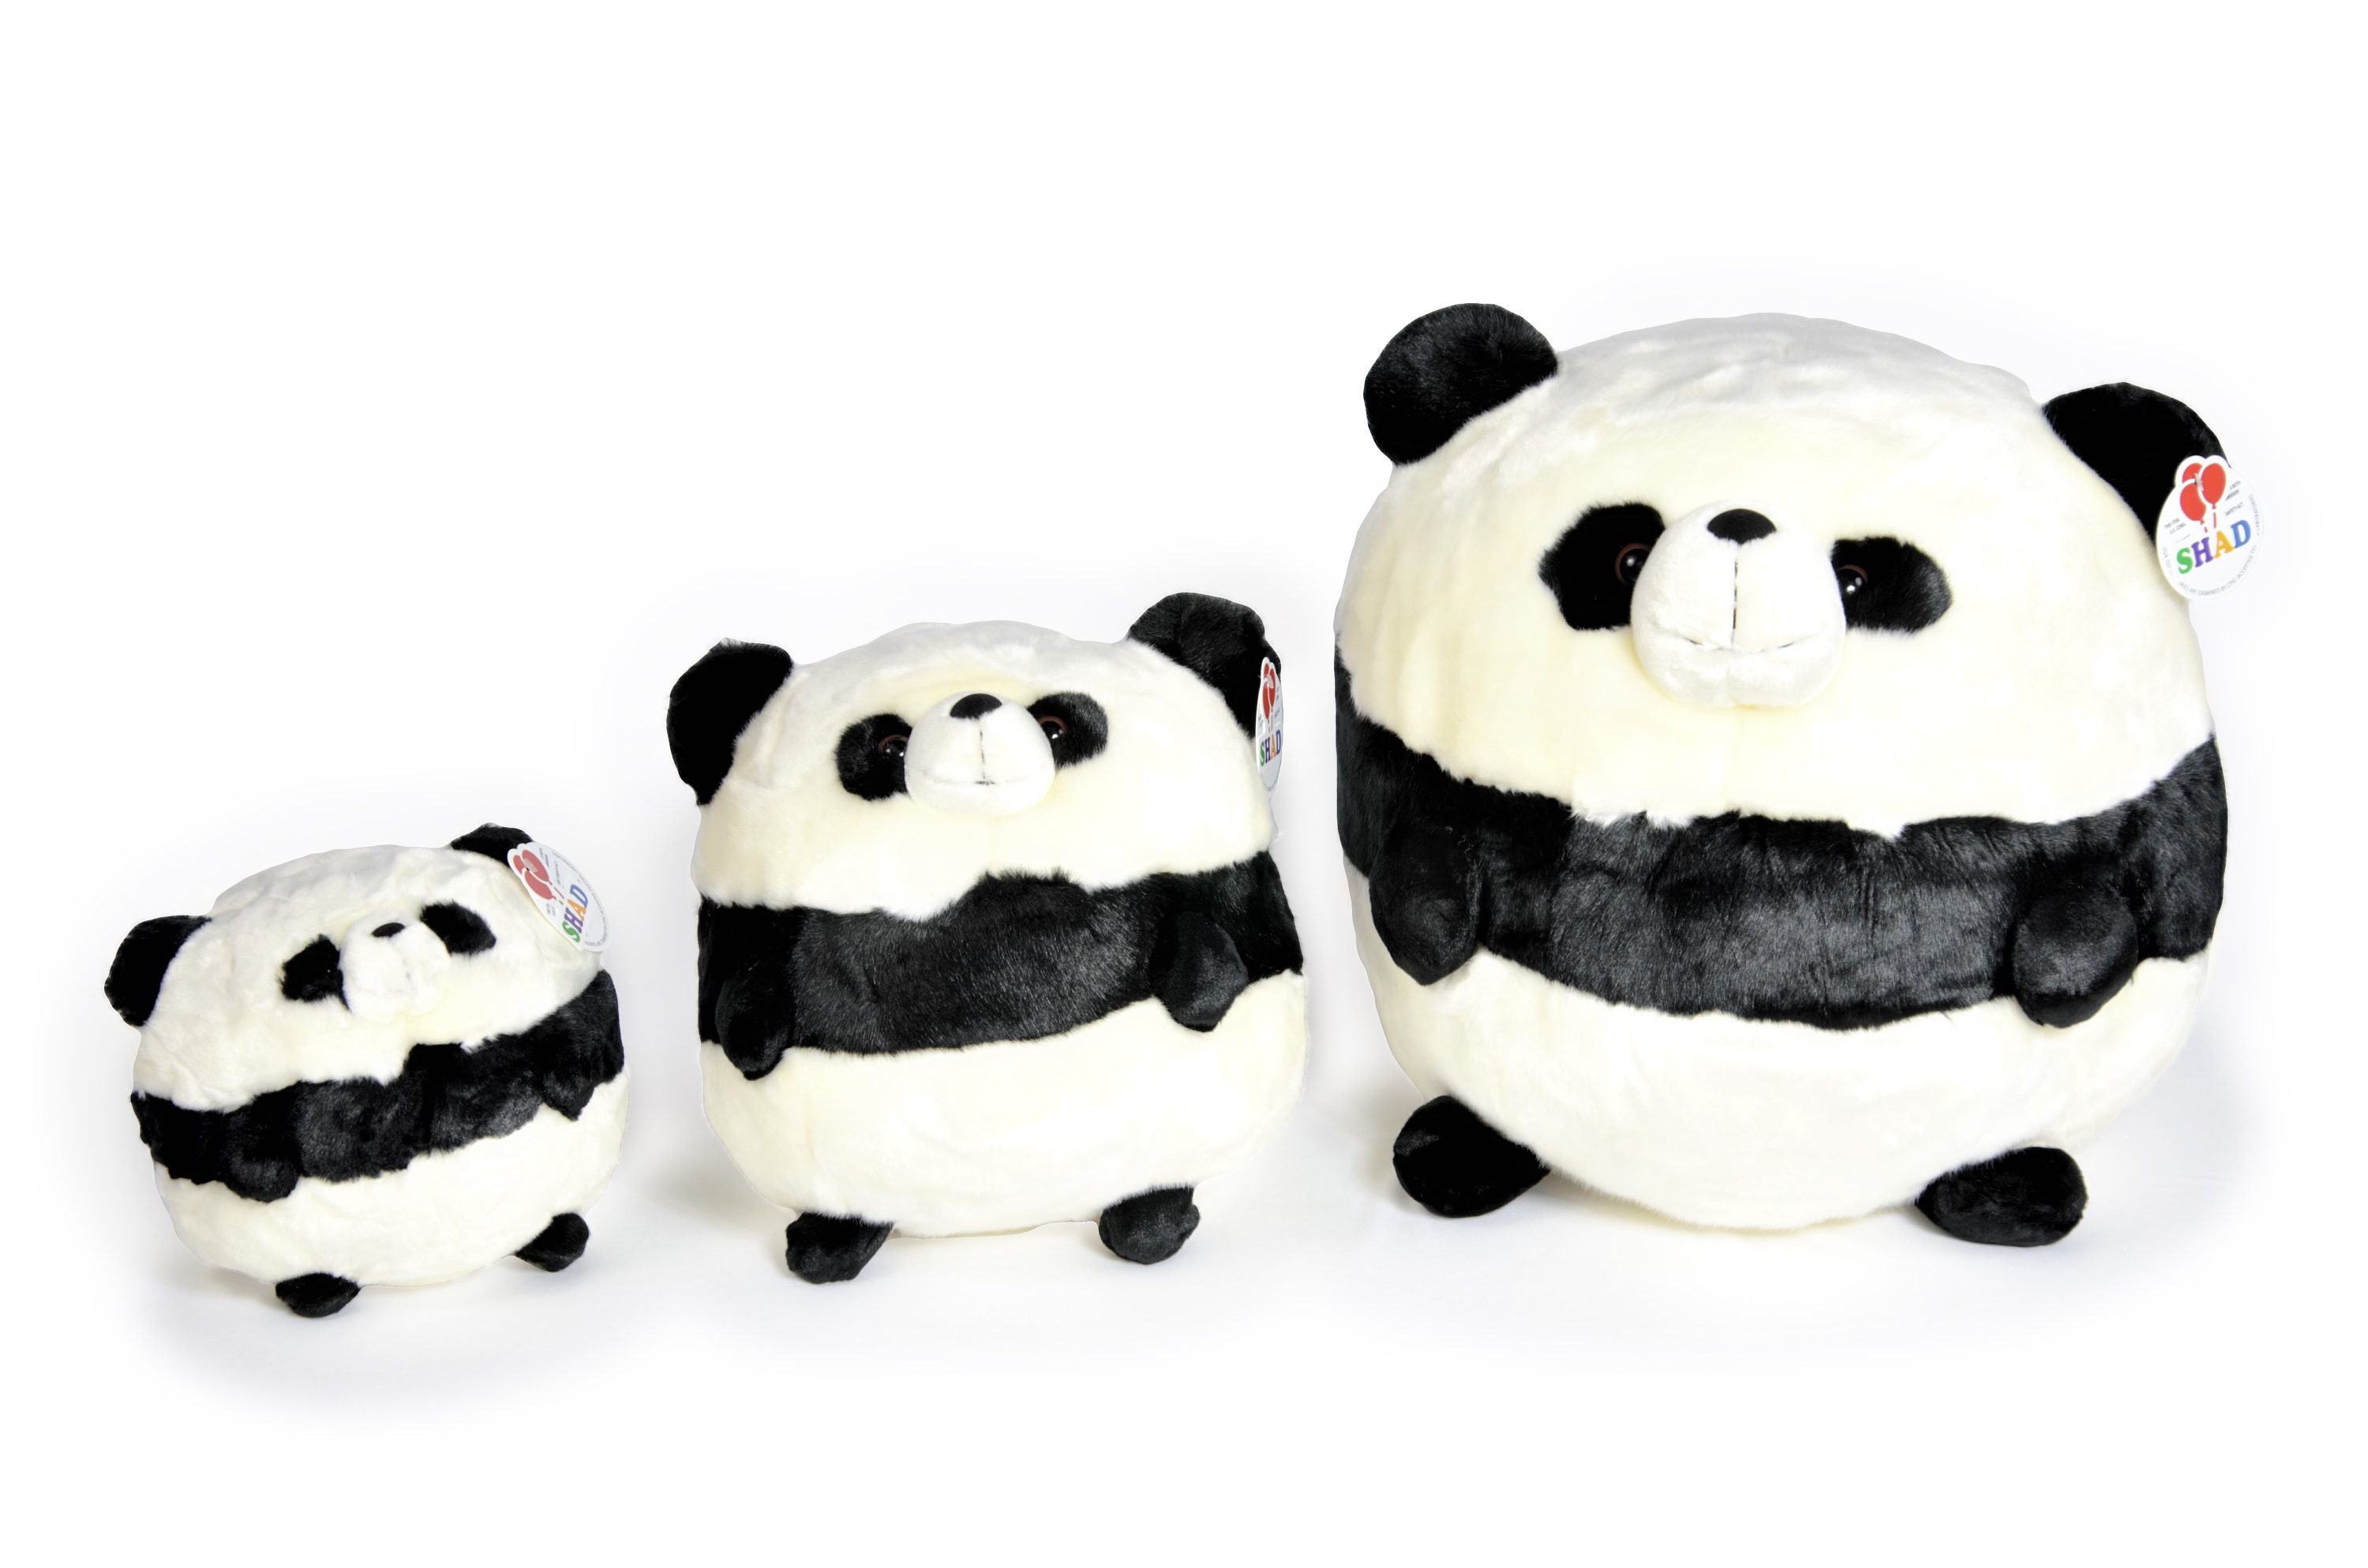 Panda Bear Stuffed Toy, Fluffy Panda Stuffed Animal, High Quality